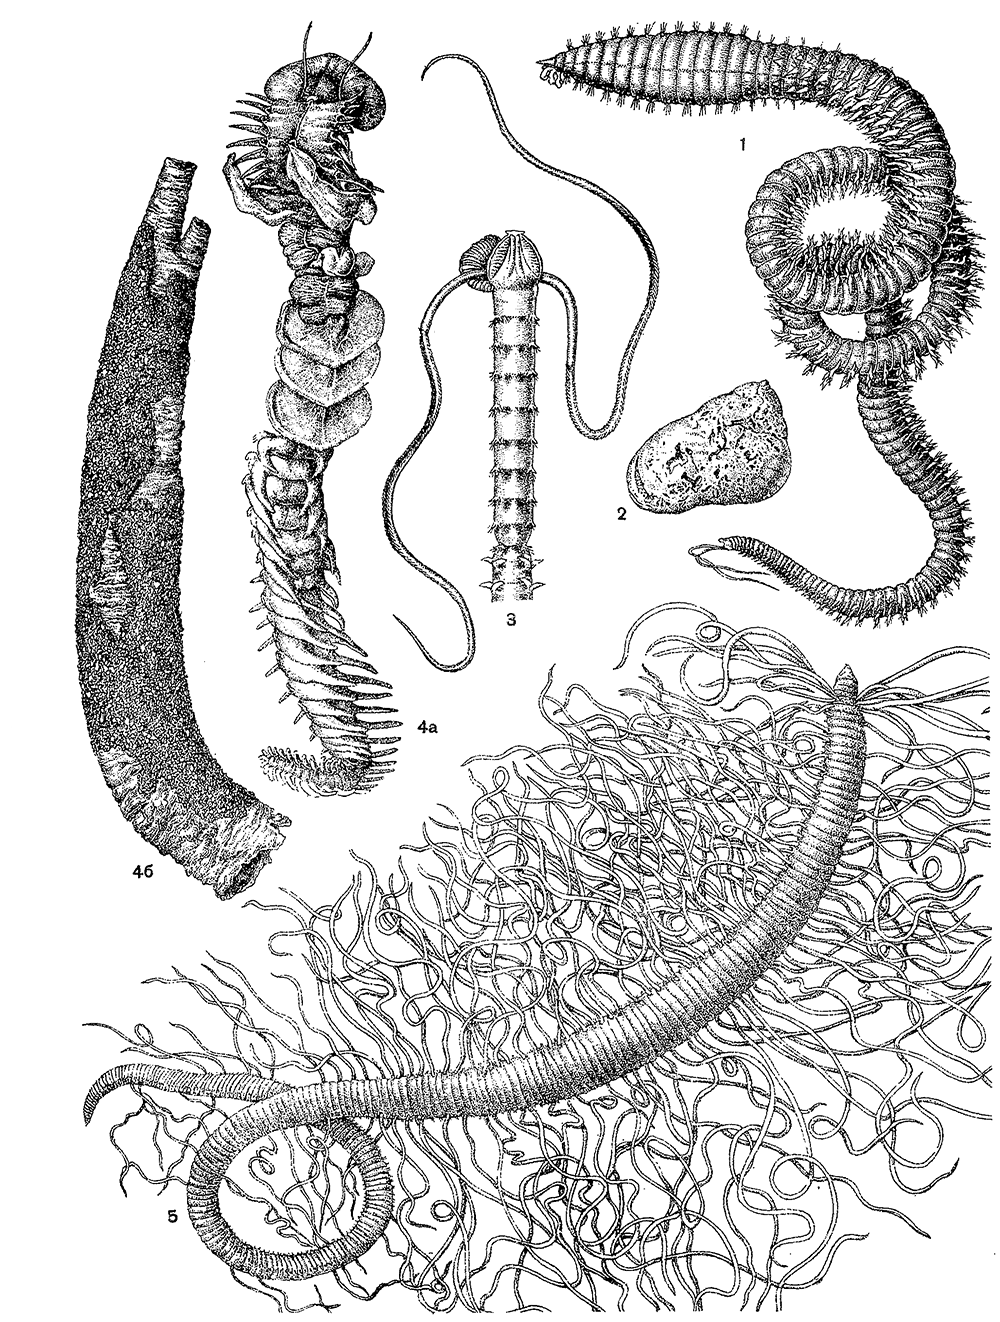 Многощетинковые черви